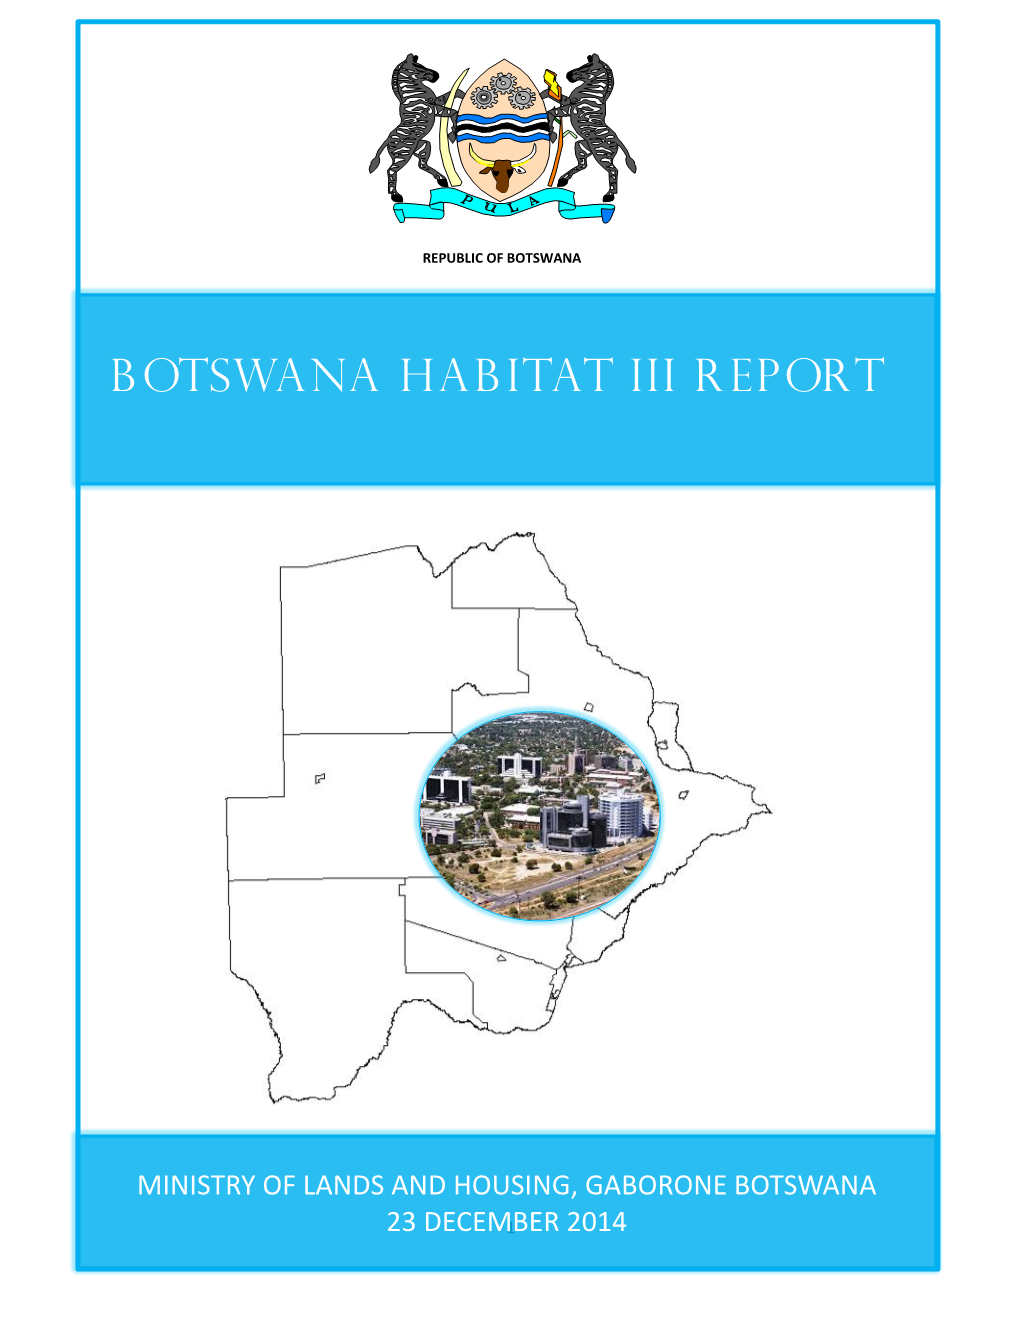 Botswana Habitat Iii Report